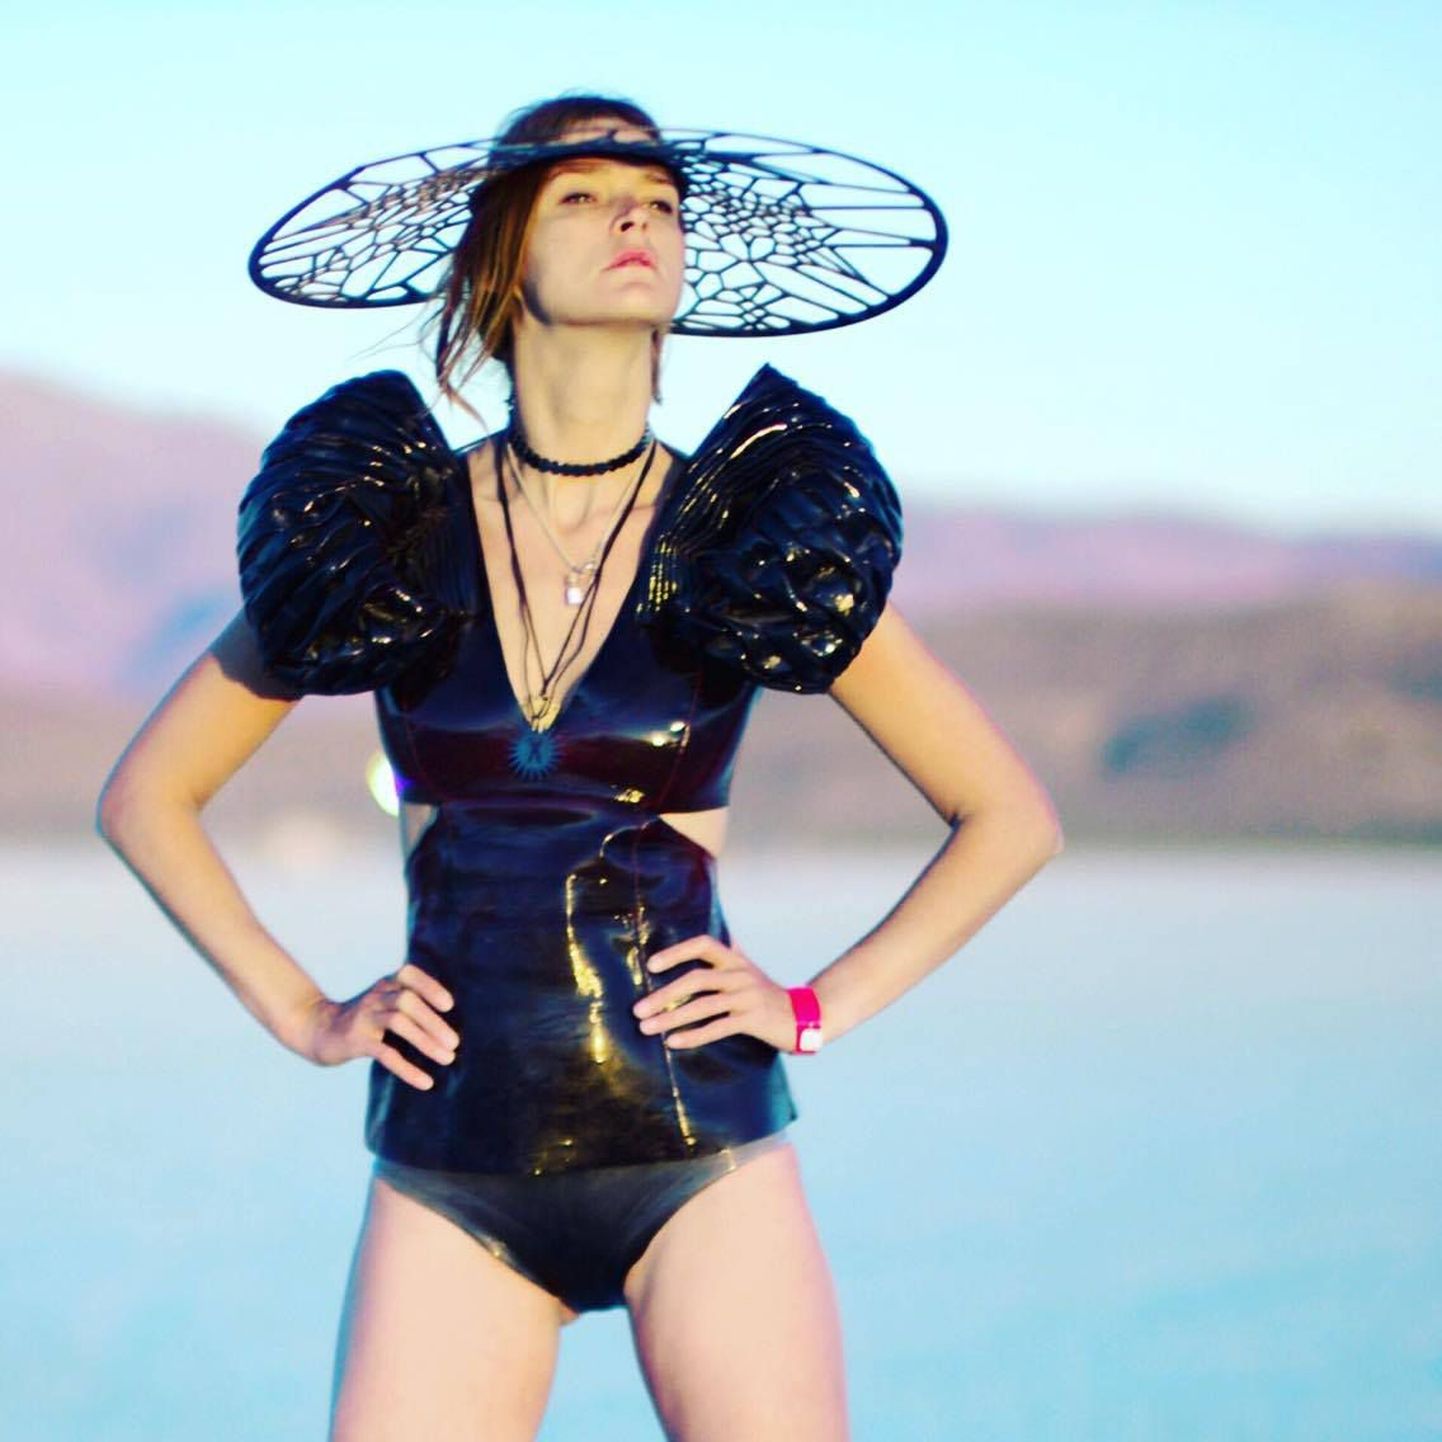 Carmen Kass festivalil Burning Man moelooja Liisi Eesmaa loomingus. Aksessuaarid valmisid Liisil koostöös arhitekt Sille Pihlakuga